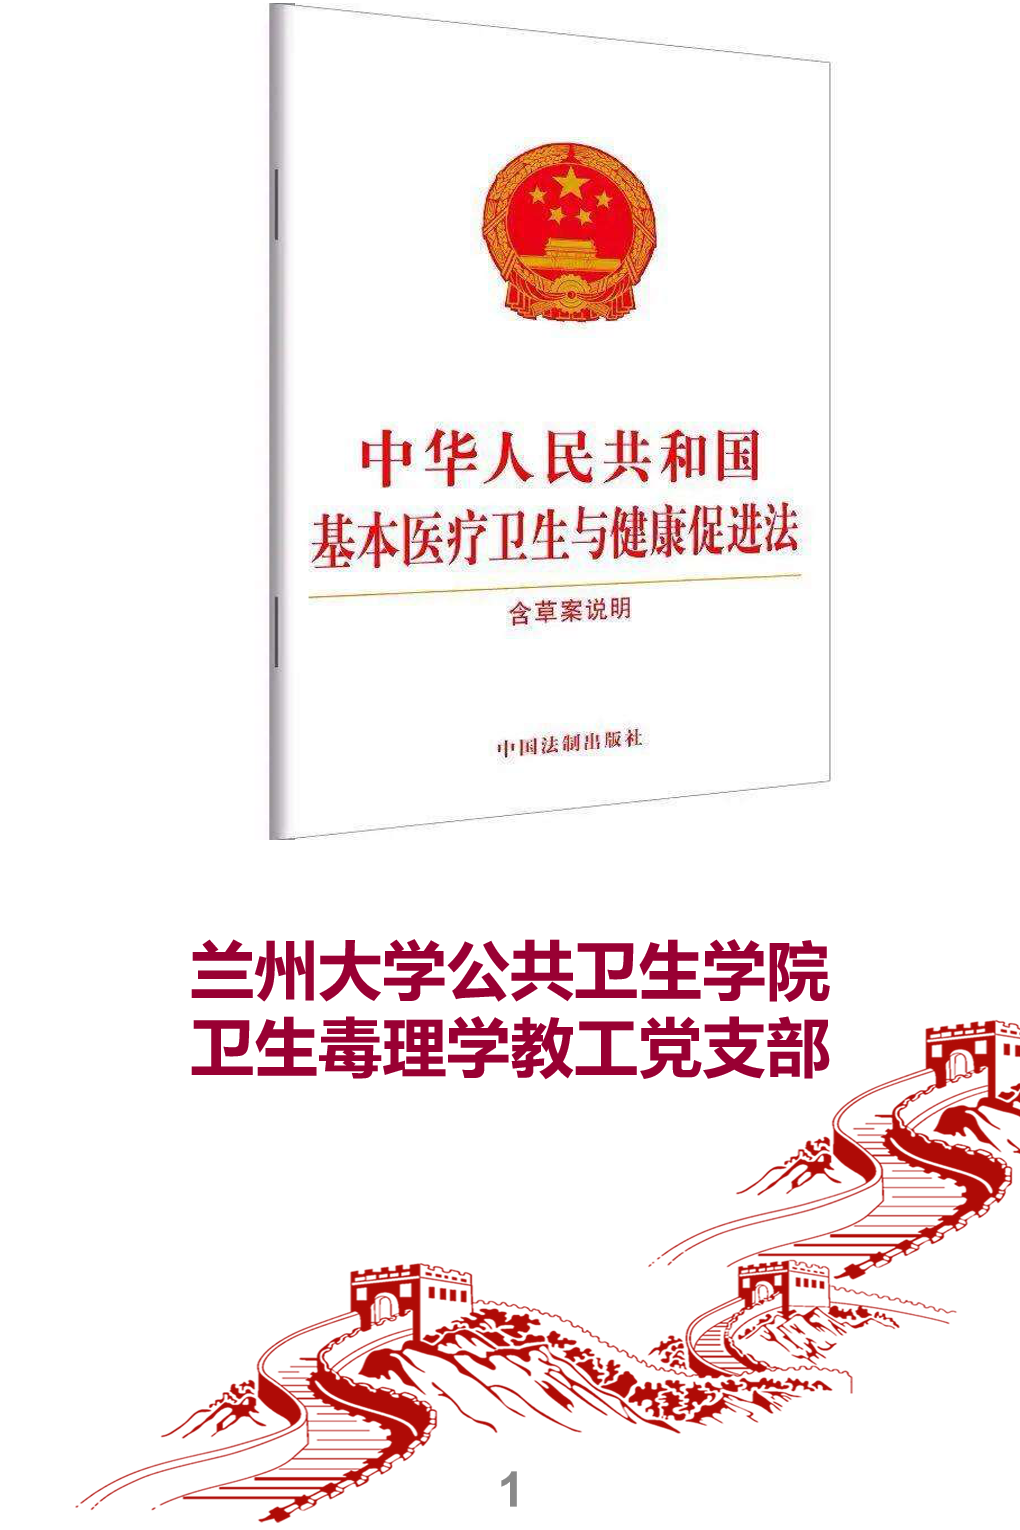 新-中华人民共和国基本医疗卫生与健康促进法--宣传册_01